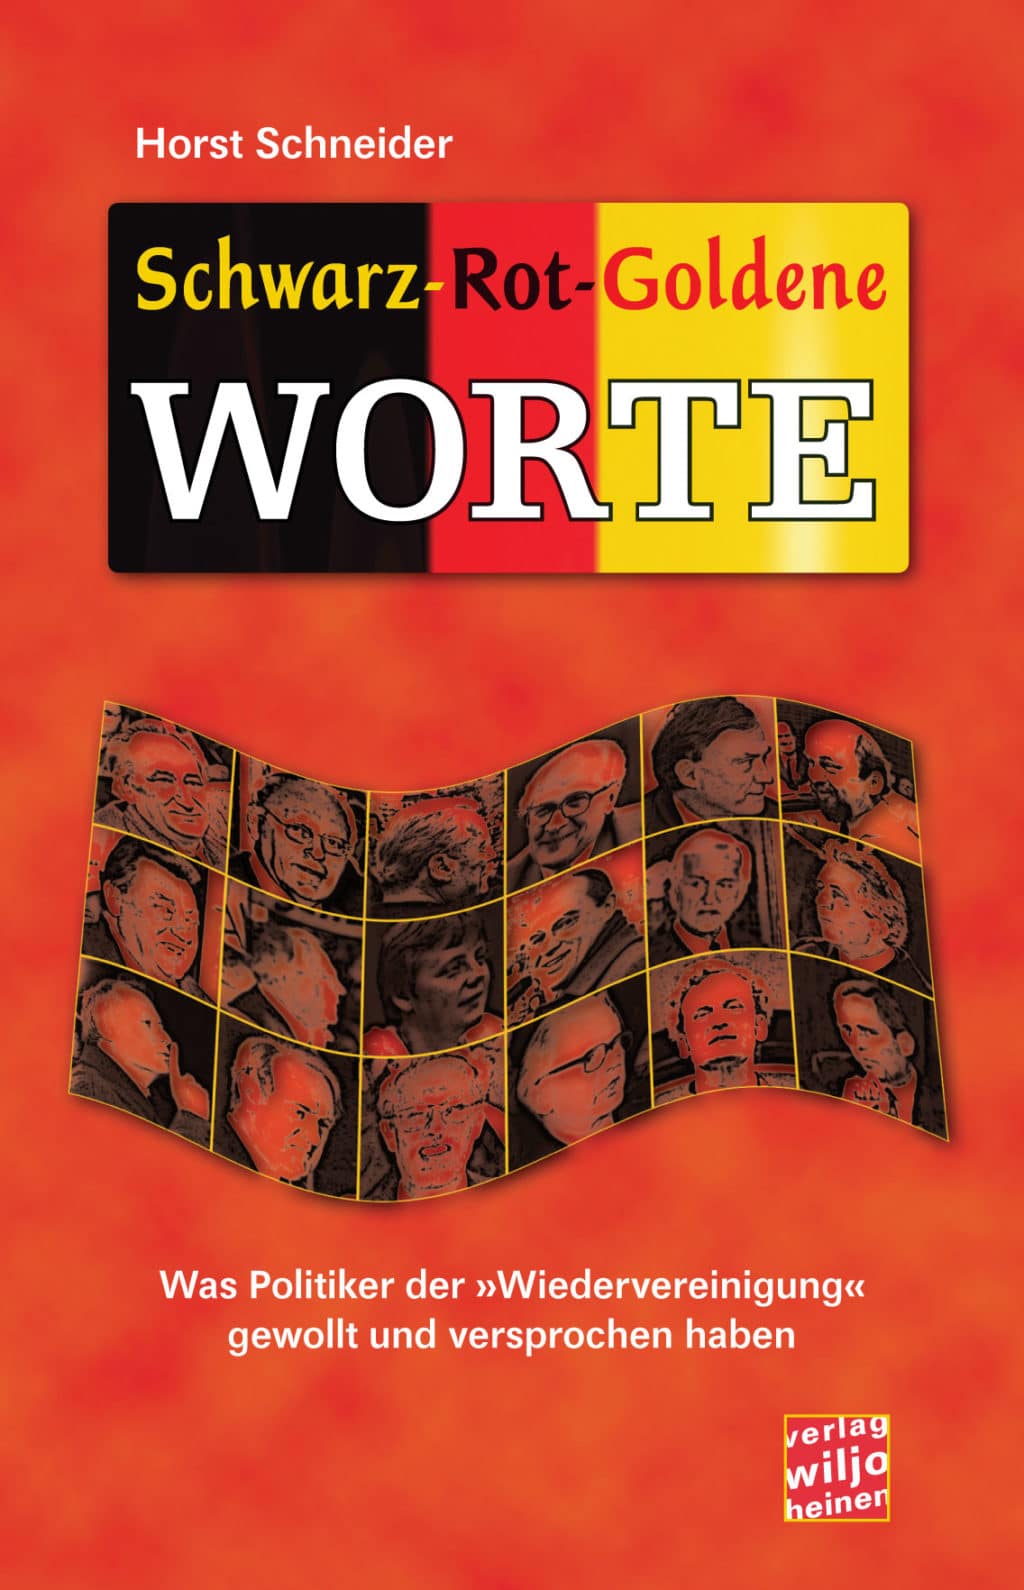 Horst Schneider: »Schwarz-Rot-Goldene Worte«